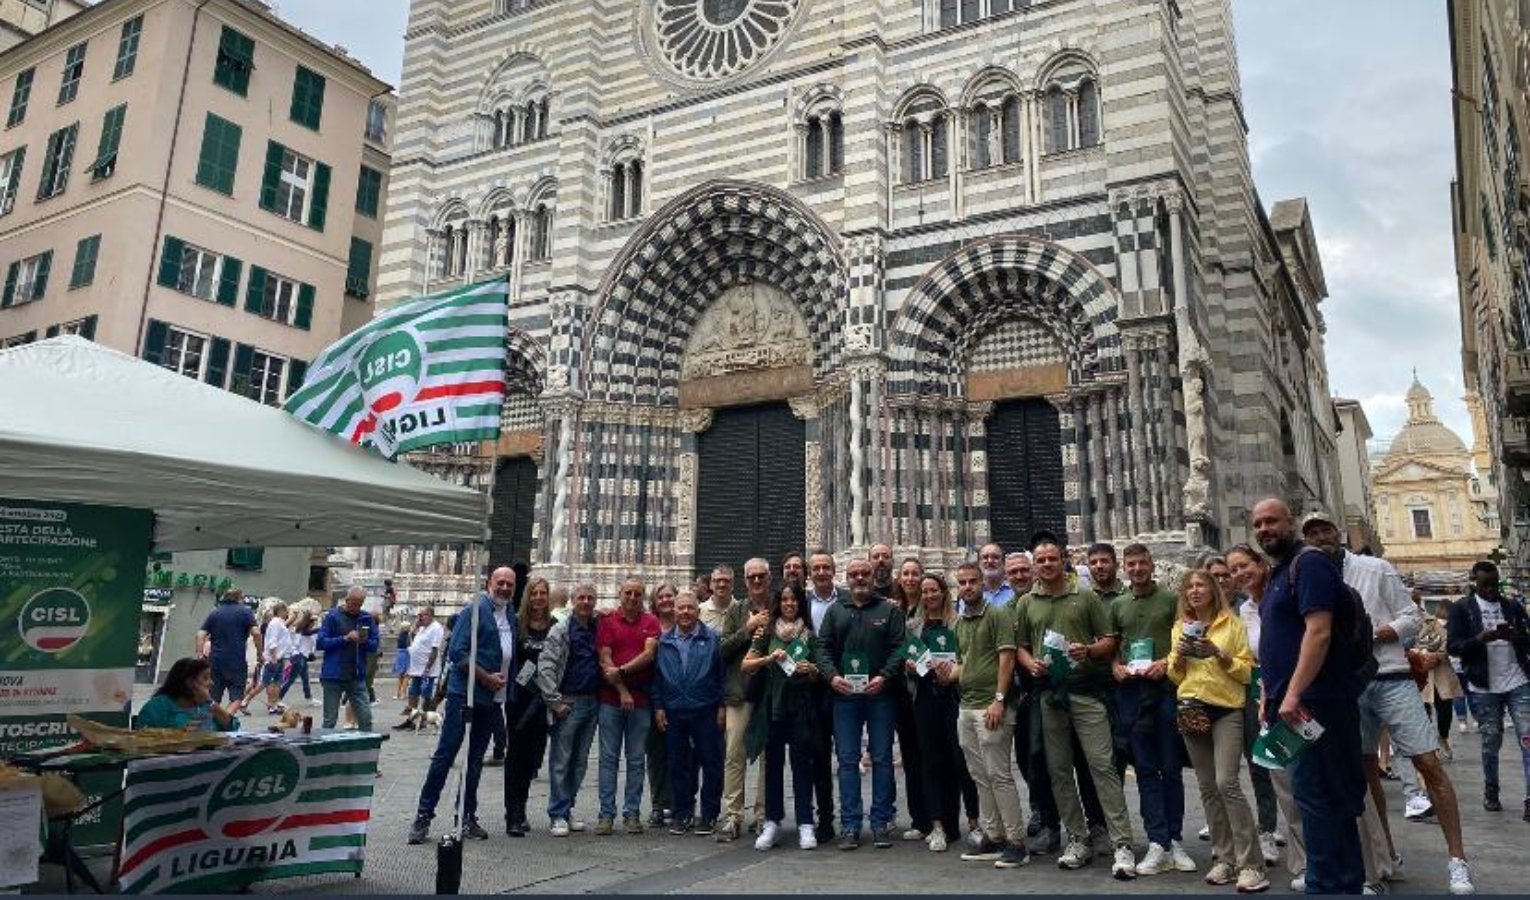 Festa della partecipazione Cisl in Liguria, Maestripieri: 